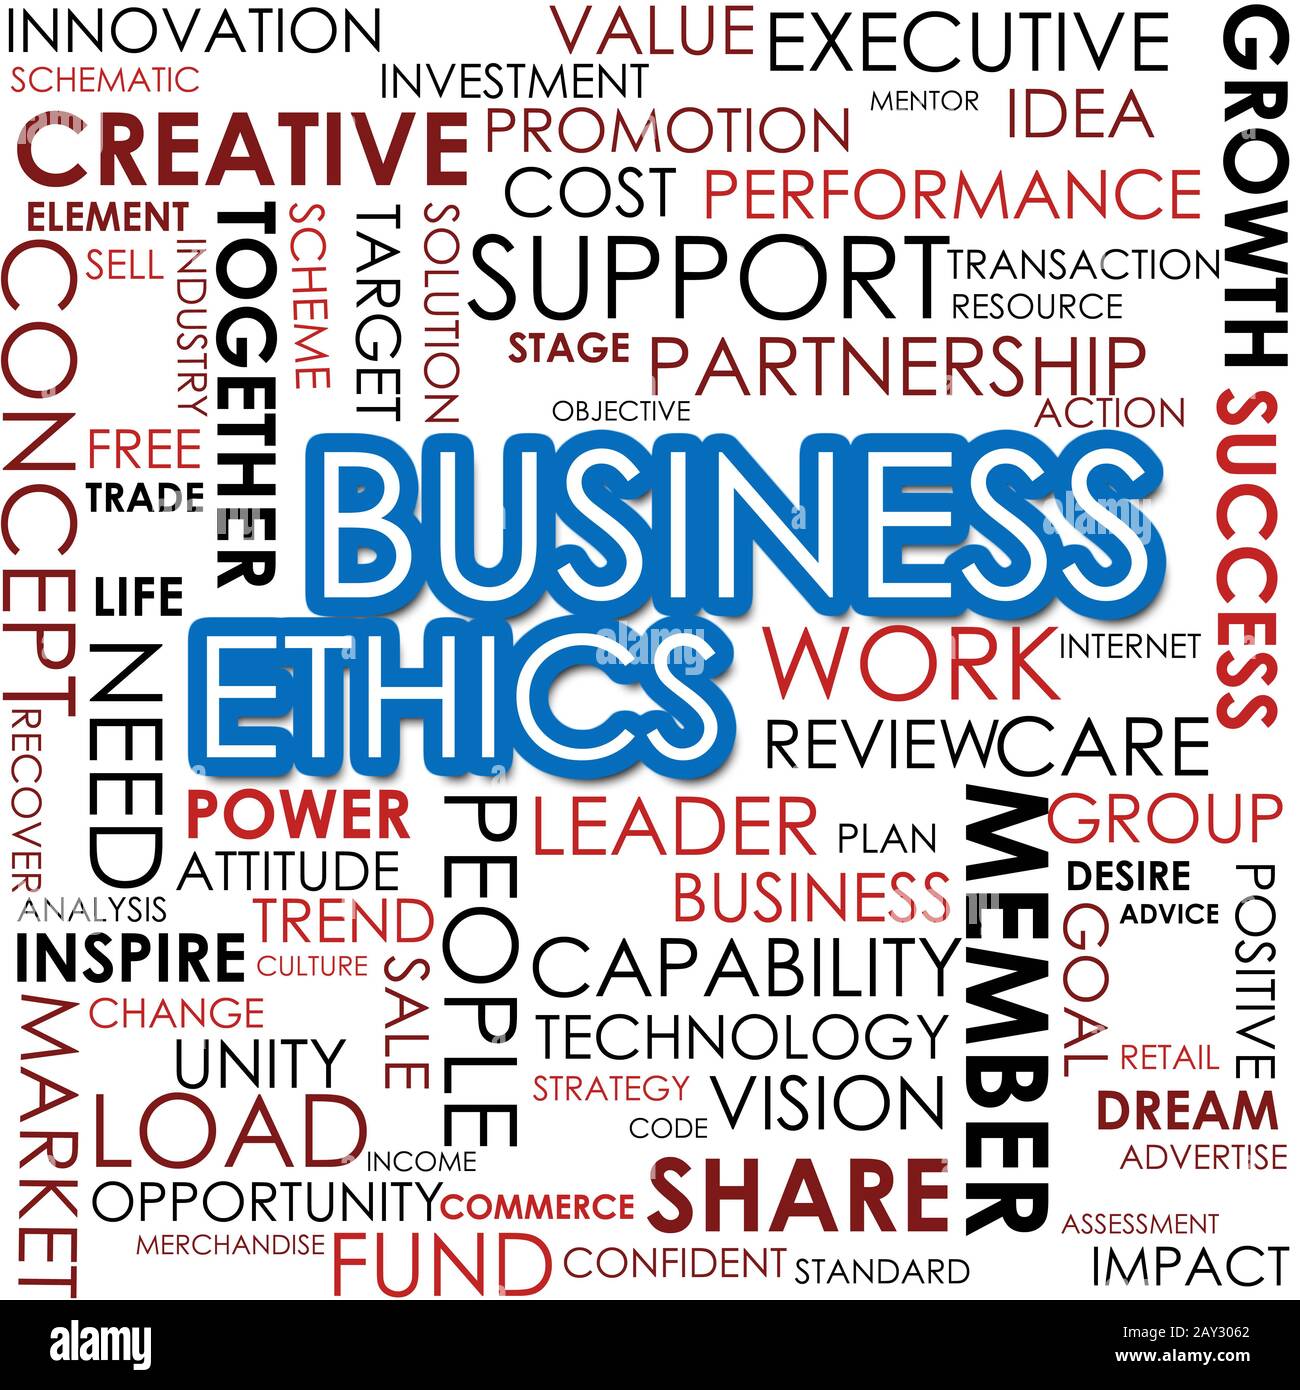 Business Ethics Wort Cloud Image Stockfoto